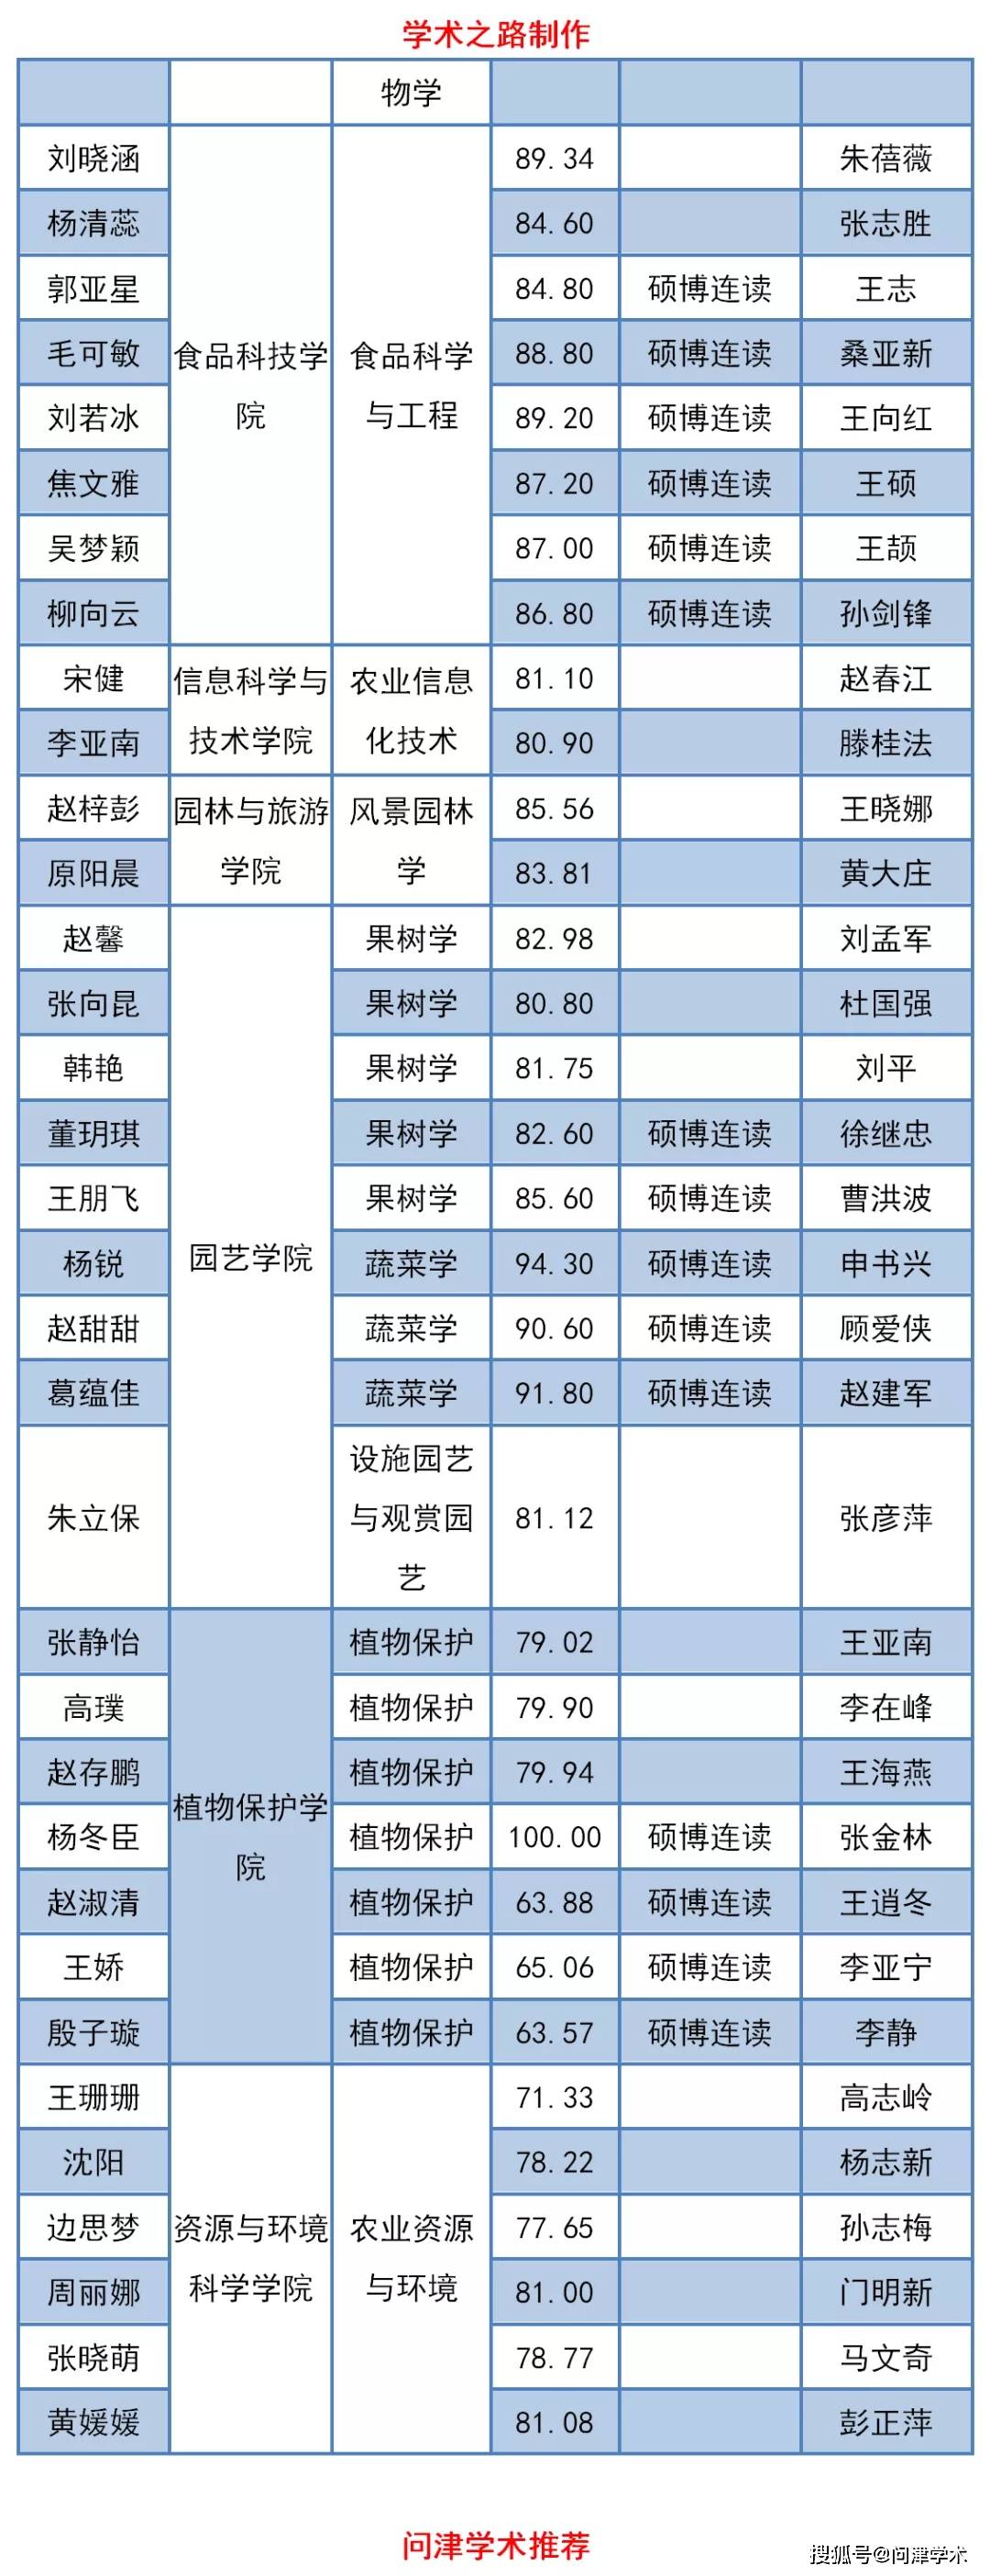 河北农业大学2020年_2019-2020河北农业大学排名_全国第156名_河北省第4名